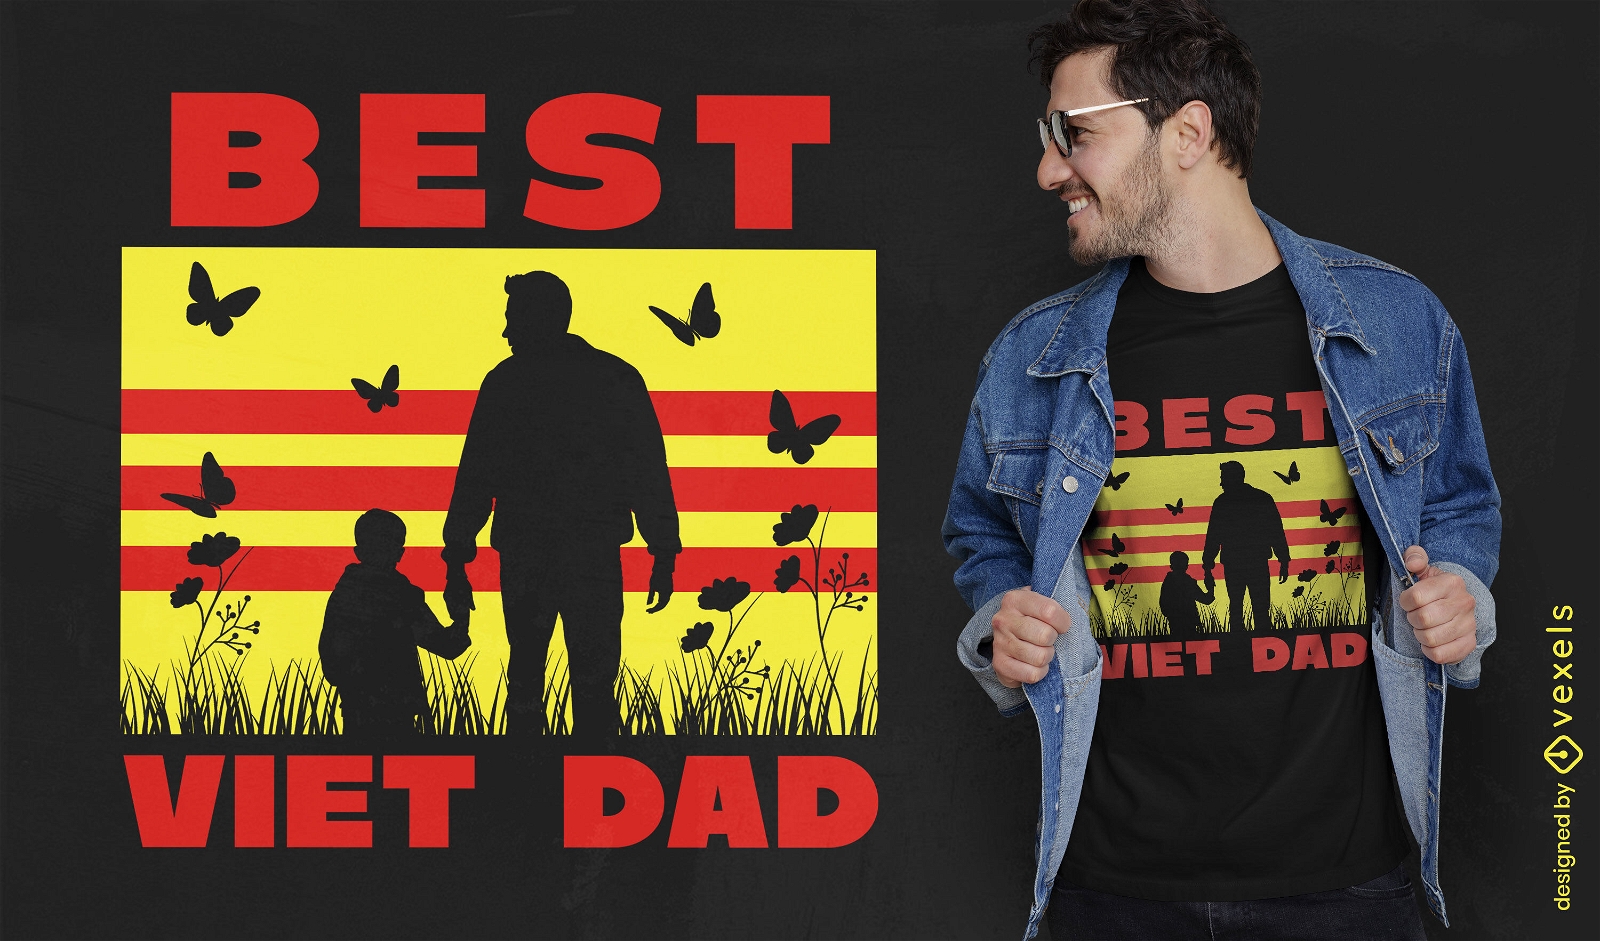 REQUEST Best dad t-shirt design